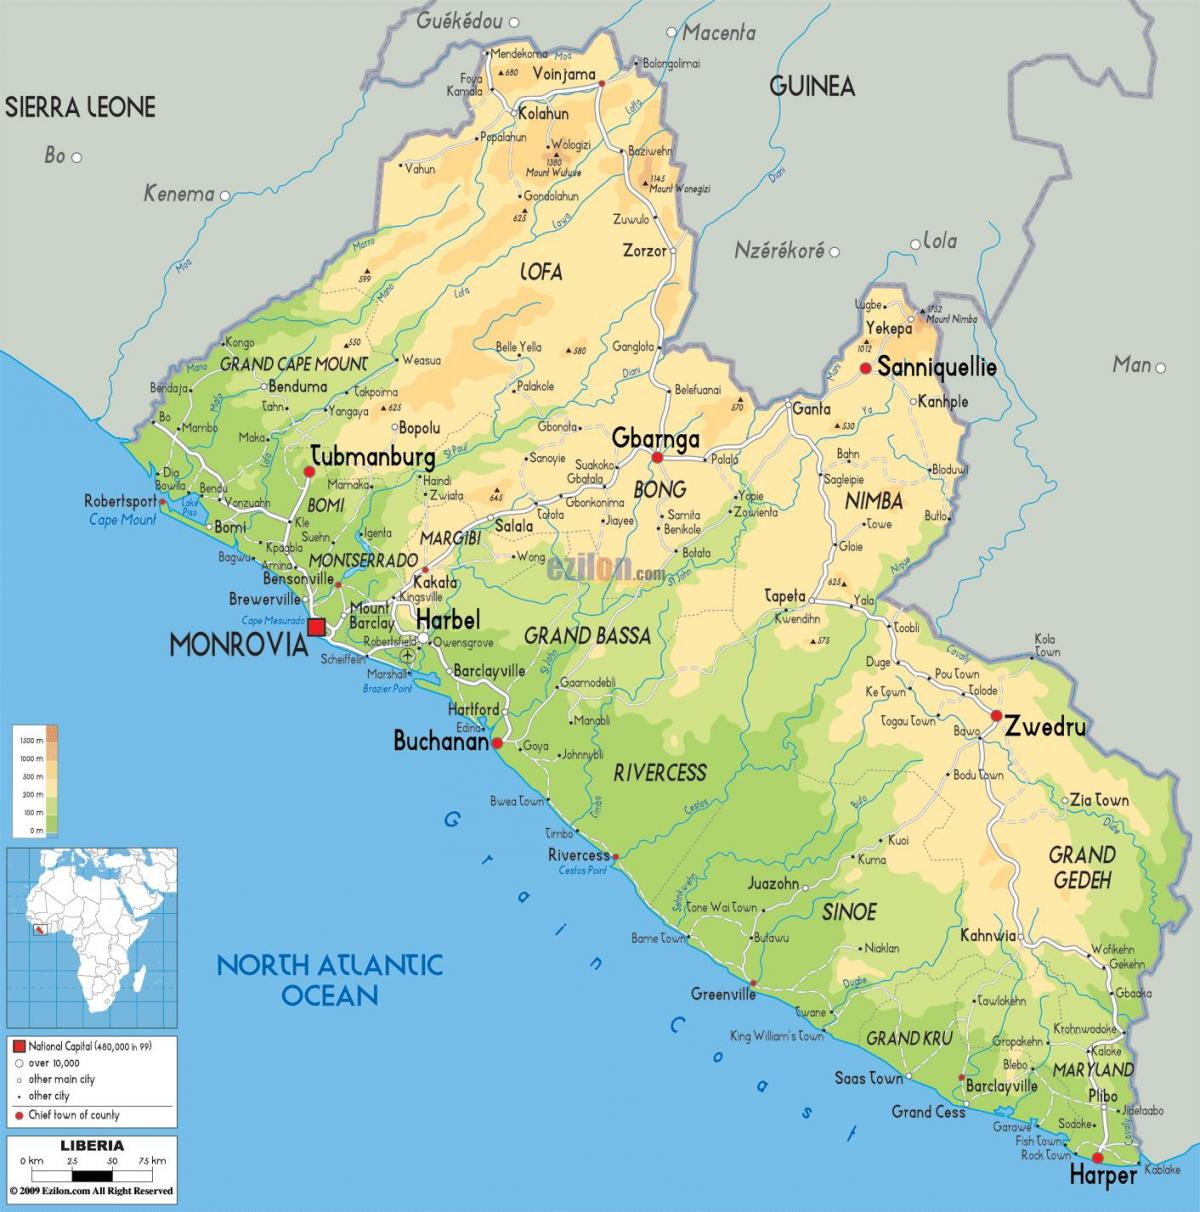 цртање на мапи Либерија